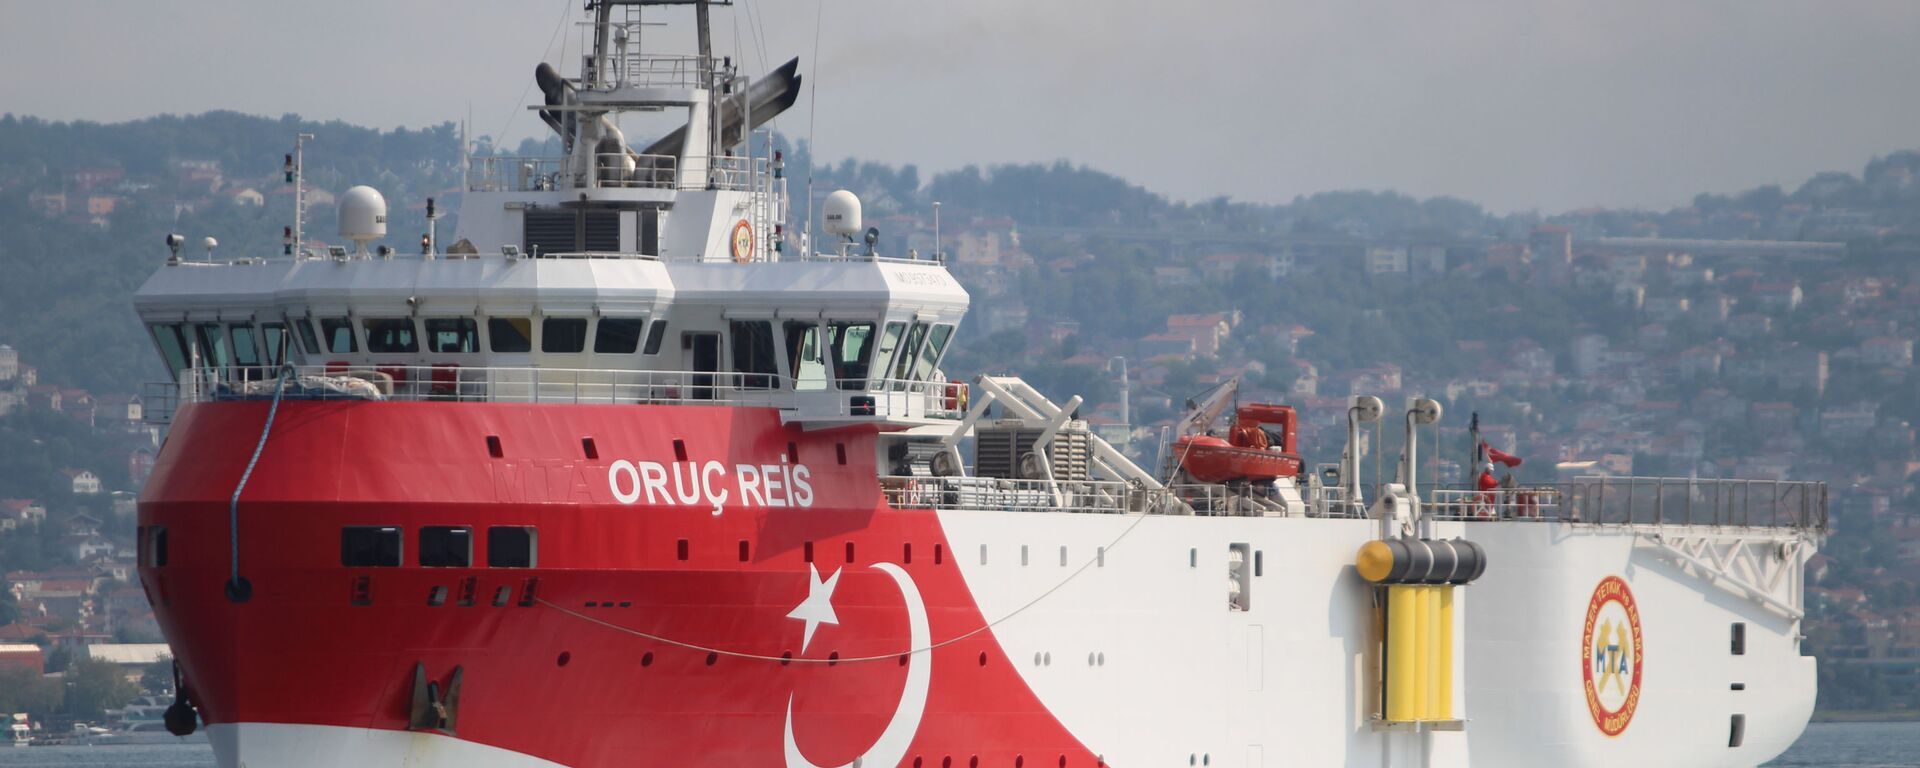 السفينة التركية أوروتش رئيس التي تقوم بالتنقيب عن الغاز شرق البحر المتوسط - سبوتنيك عربي, 1920, 04.05.2021